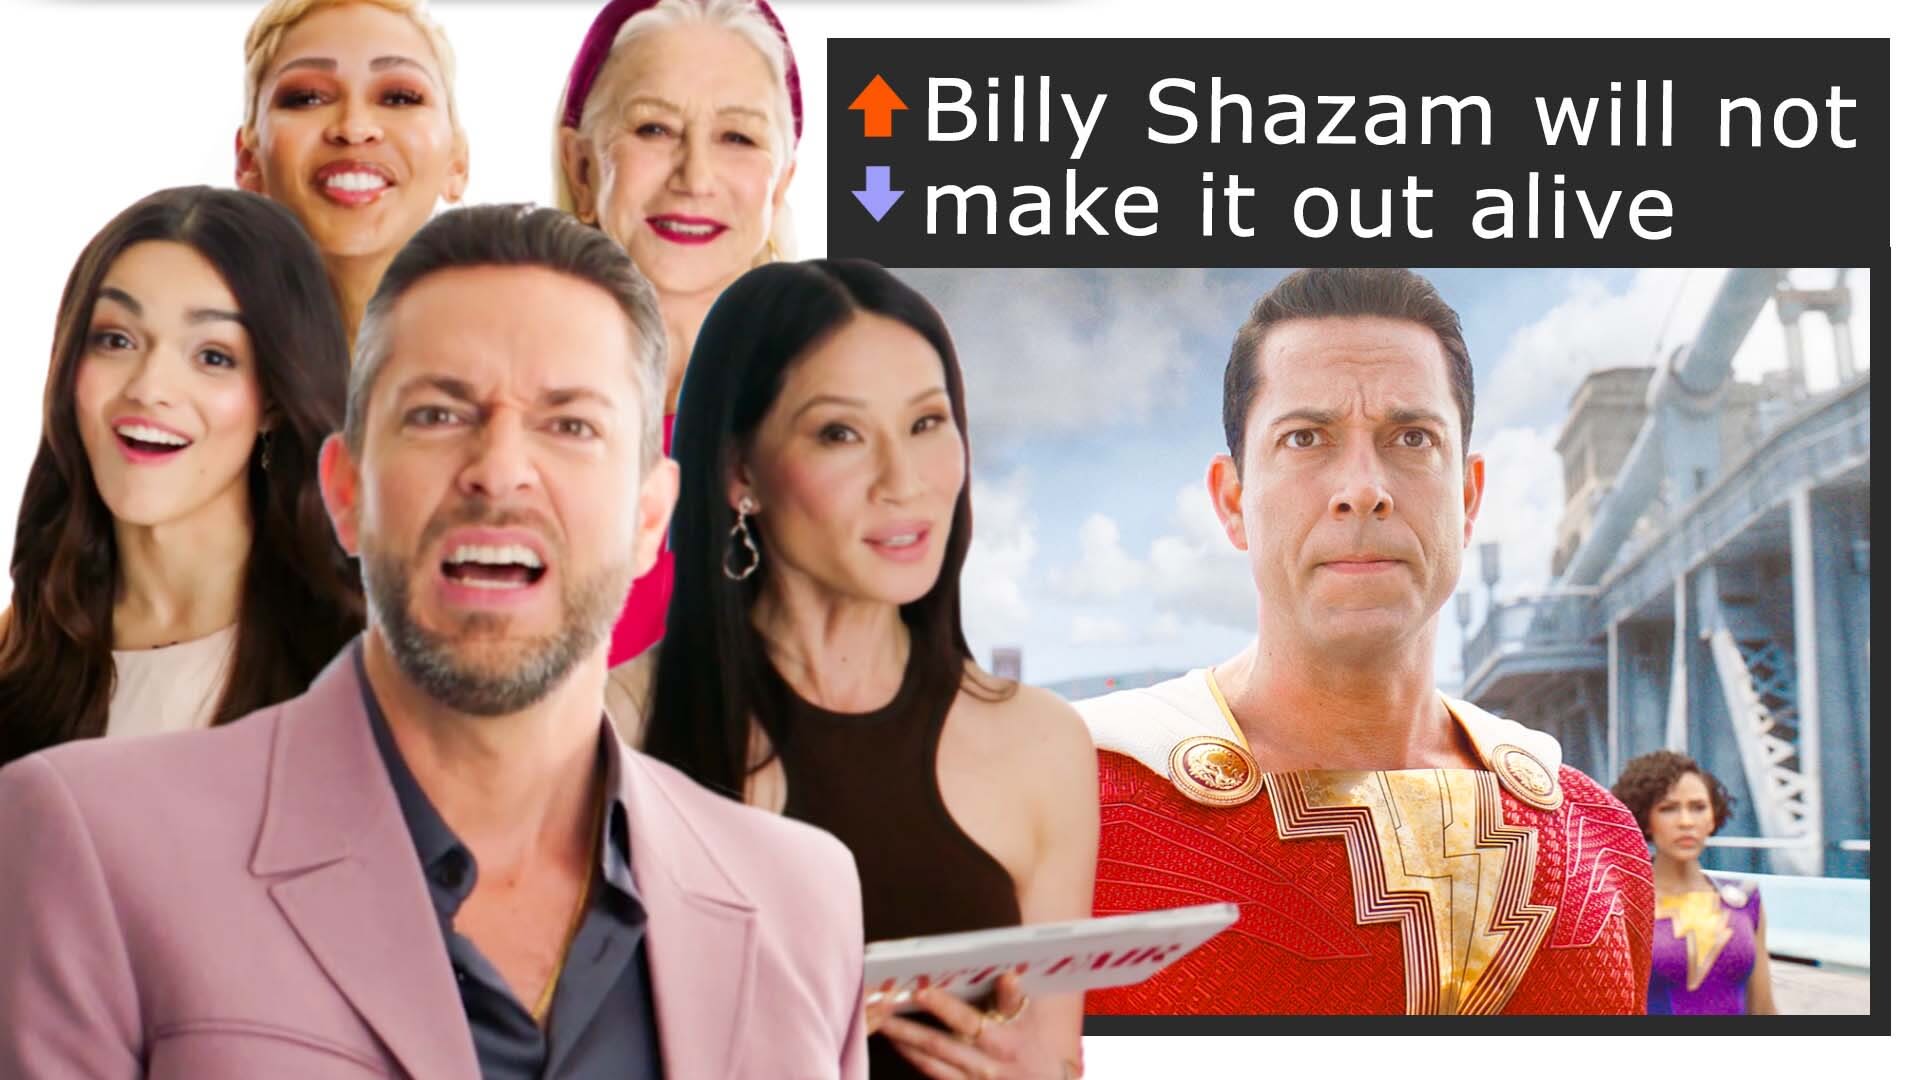 Watch 'Shazam! Fury of the Gods' Cast Break Down Fan Theories